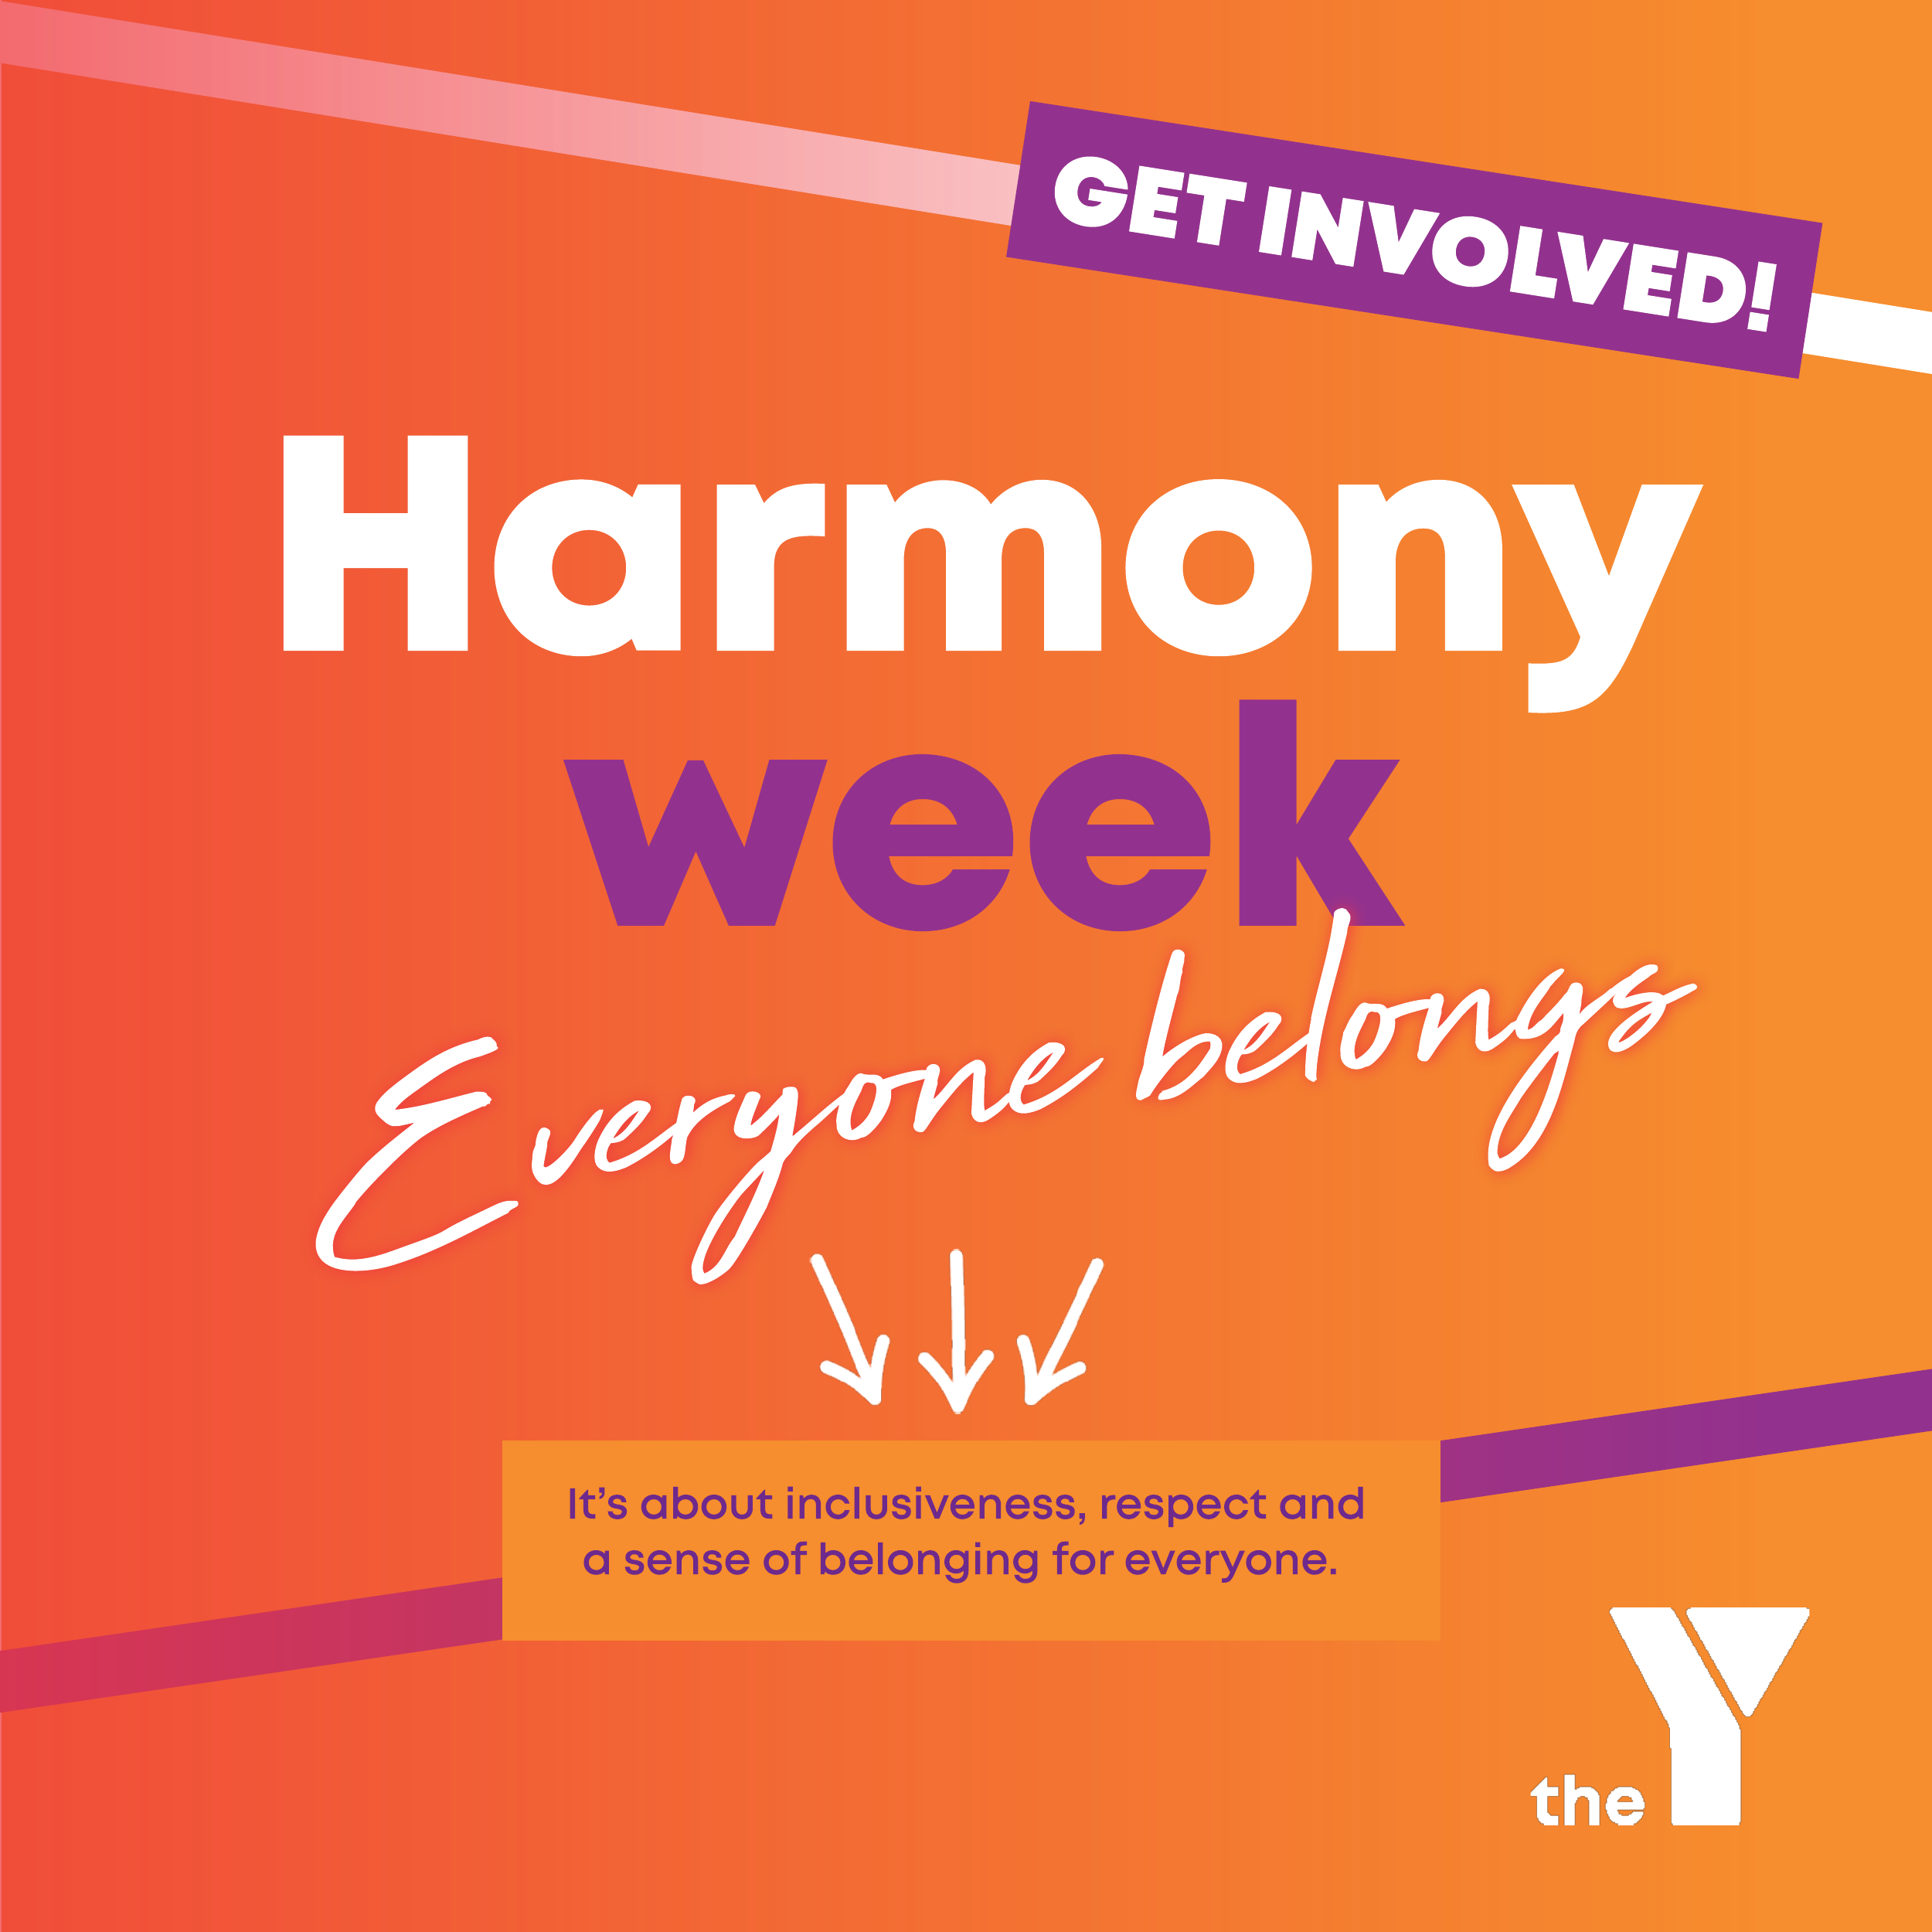 Harmony week - everyone belongs